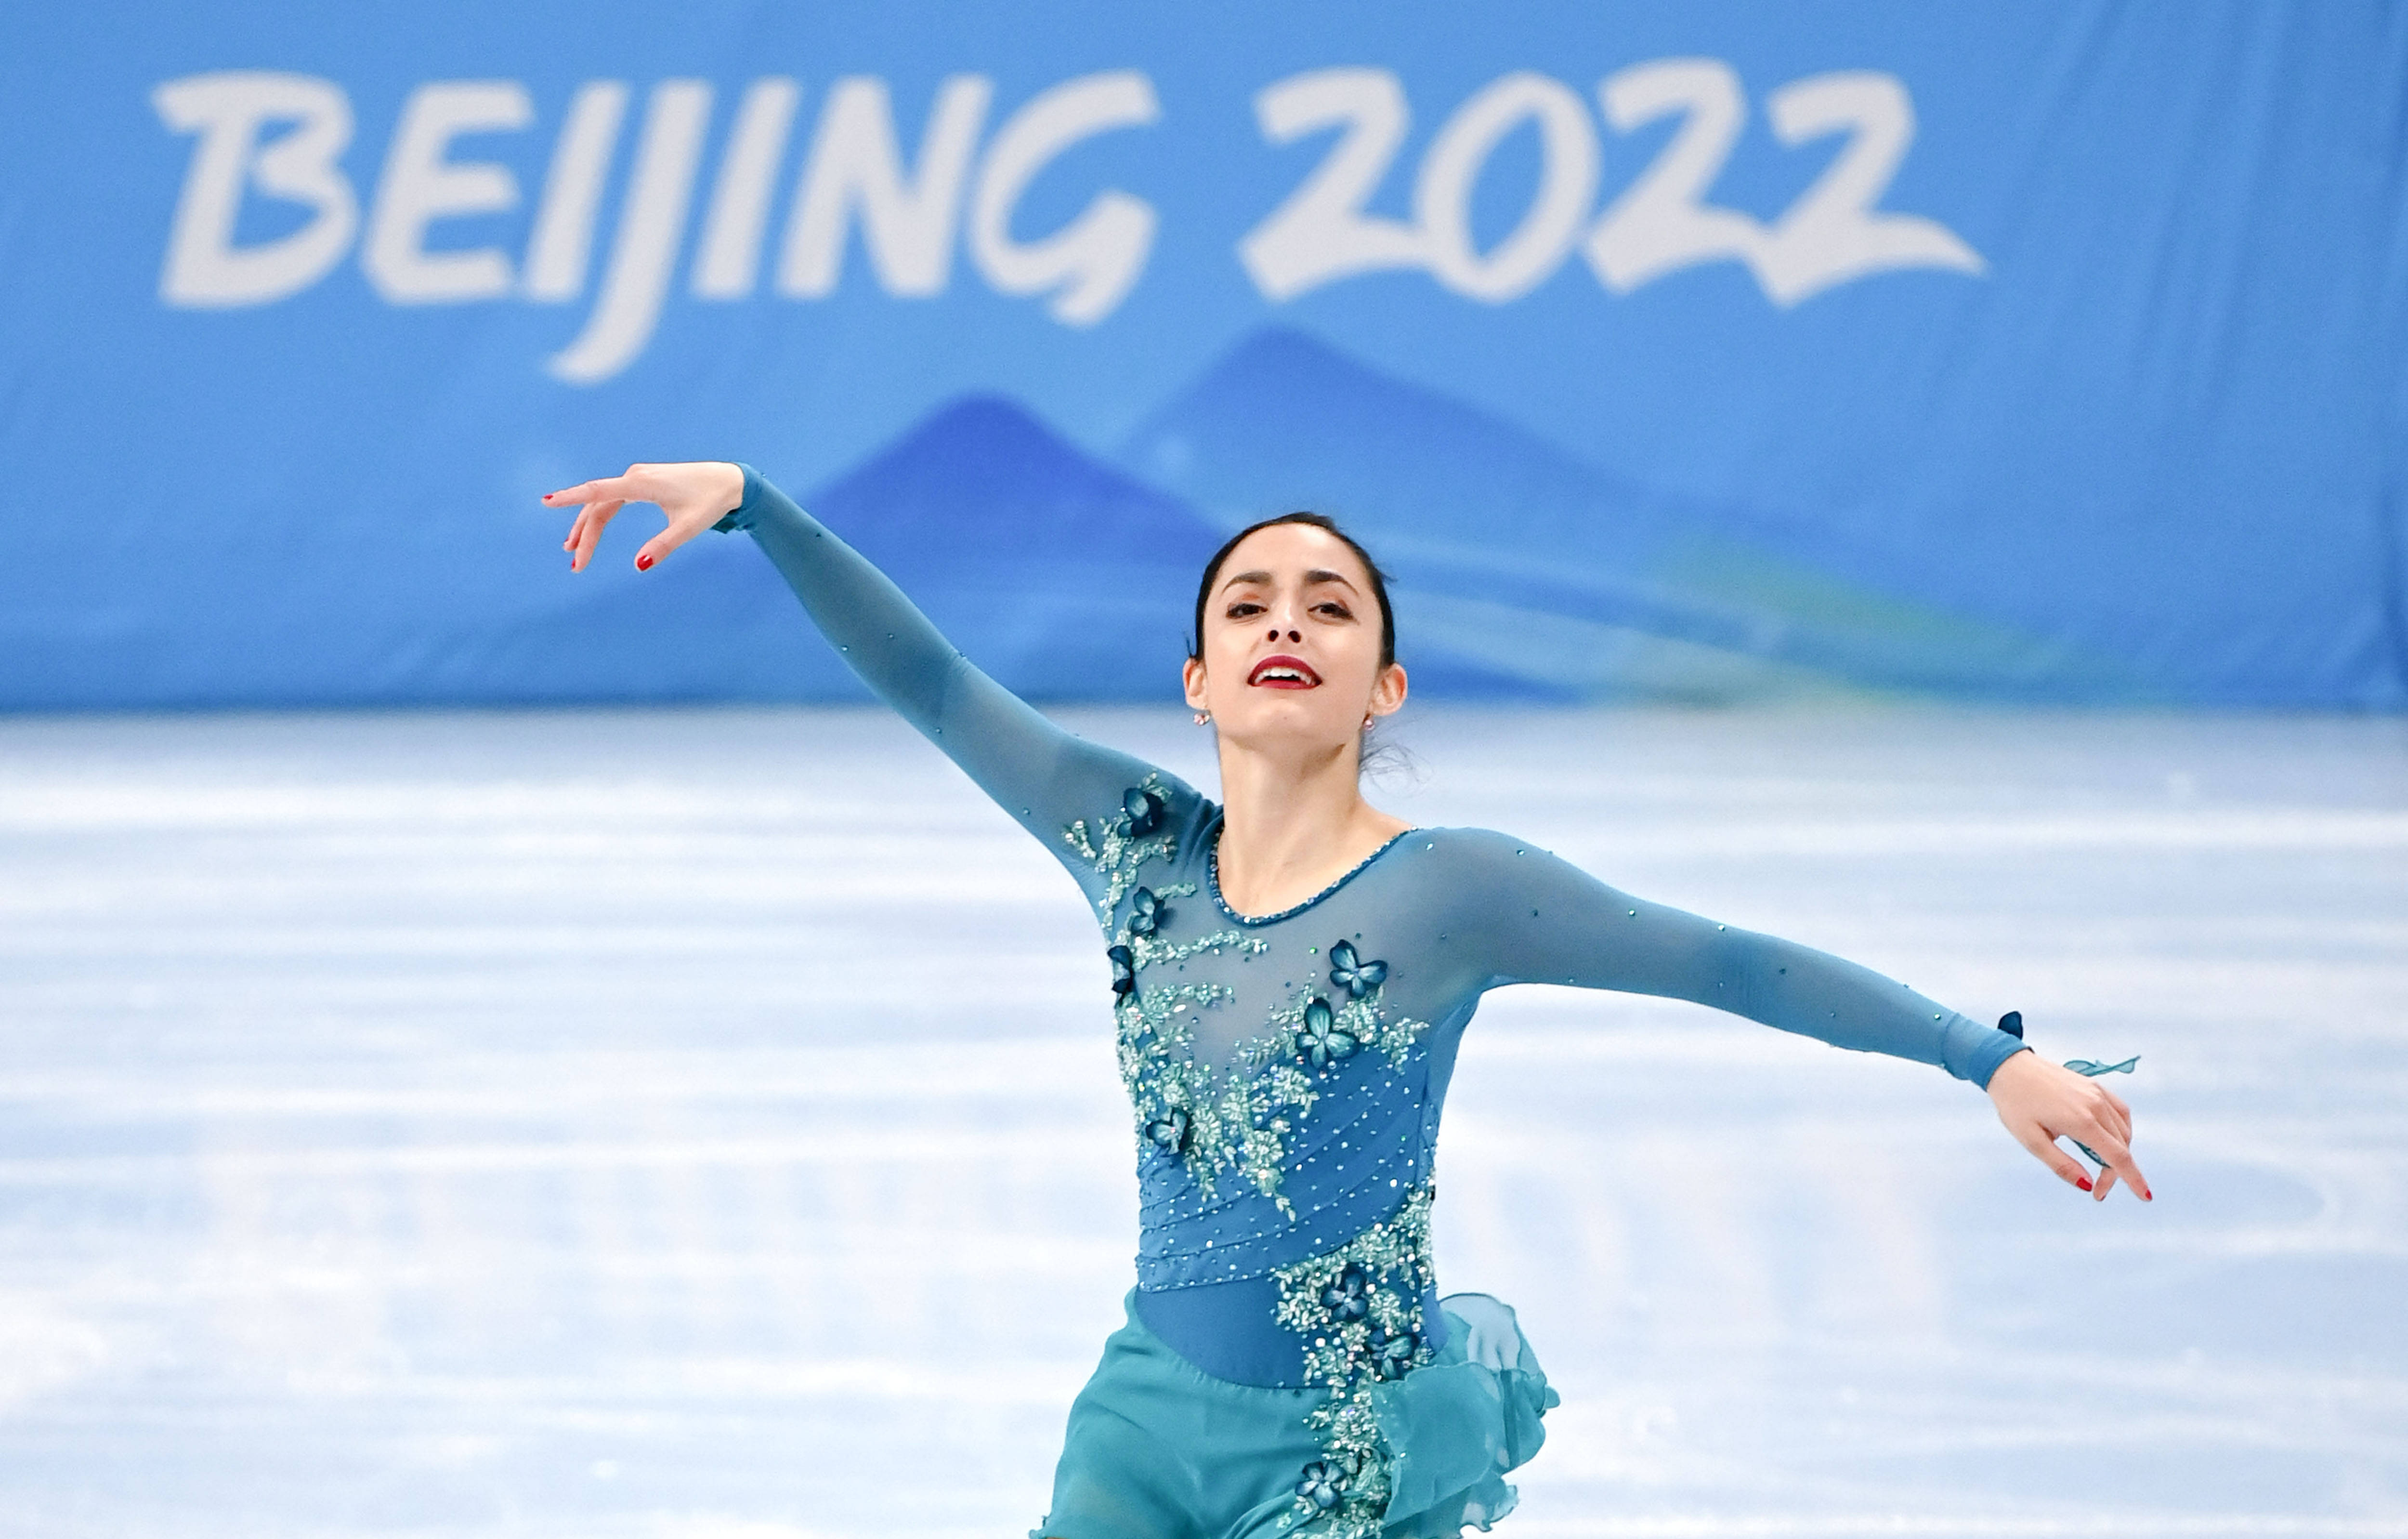 新华社记者 李一博 摄当日,北京2022年冬奥会花样滑冰女子单人滑自由